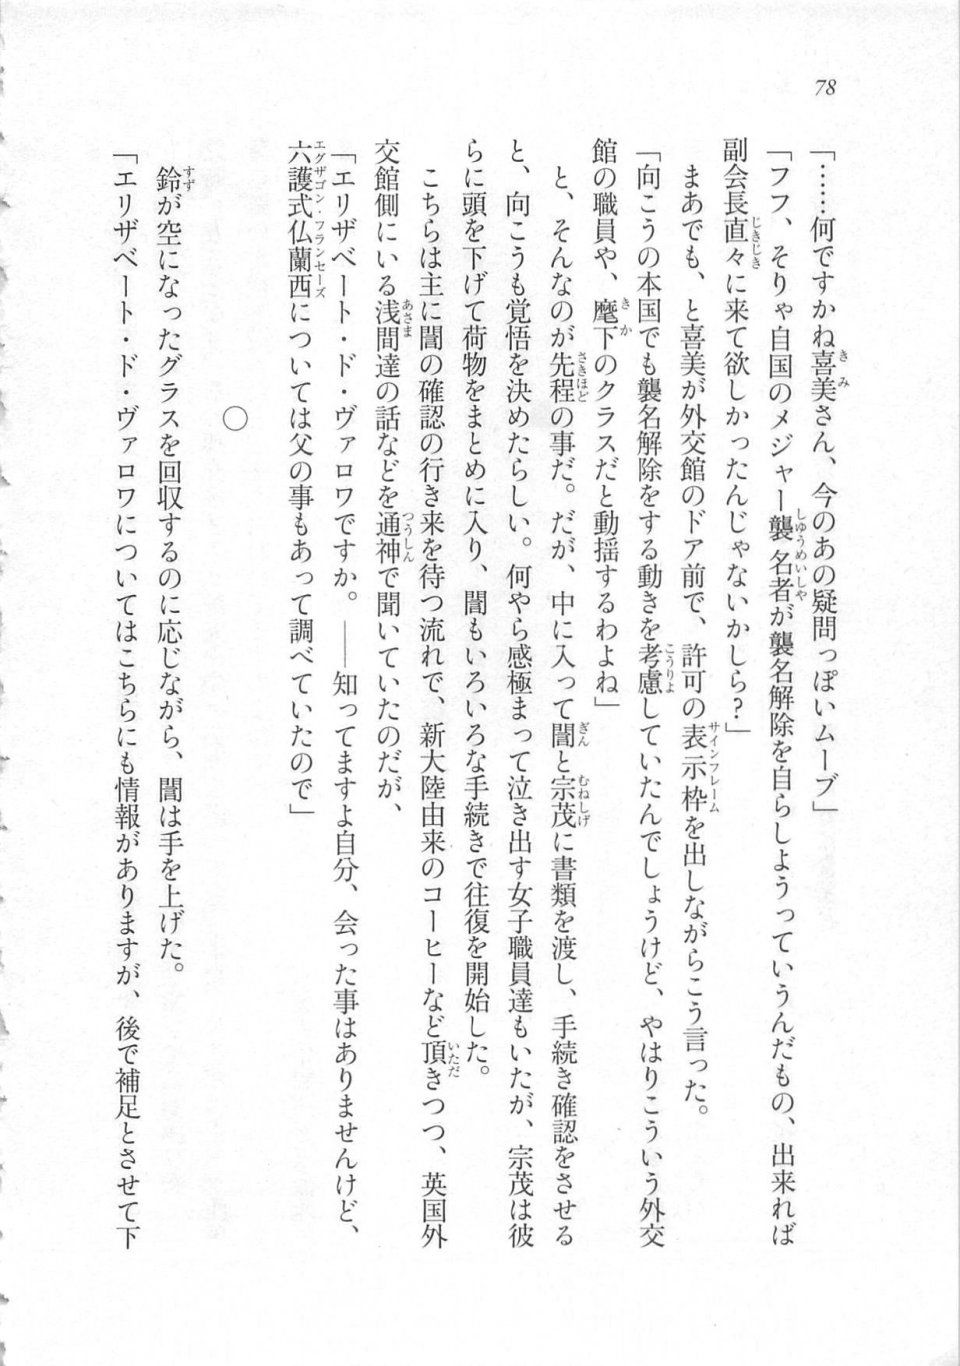 Kyoukai Senjou no Horizon LN Sidestory Vol 3 - Photo #82